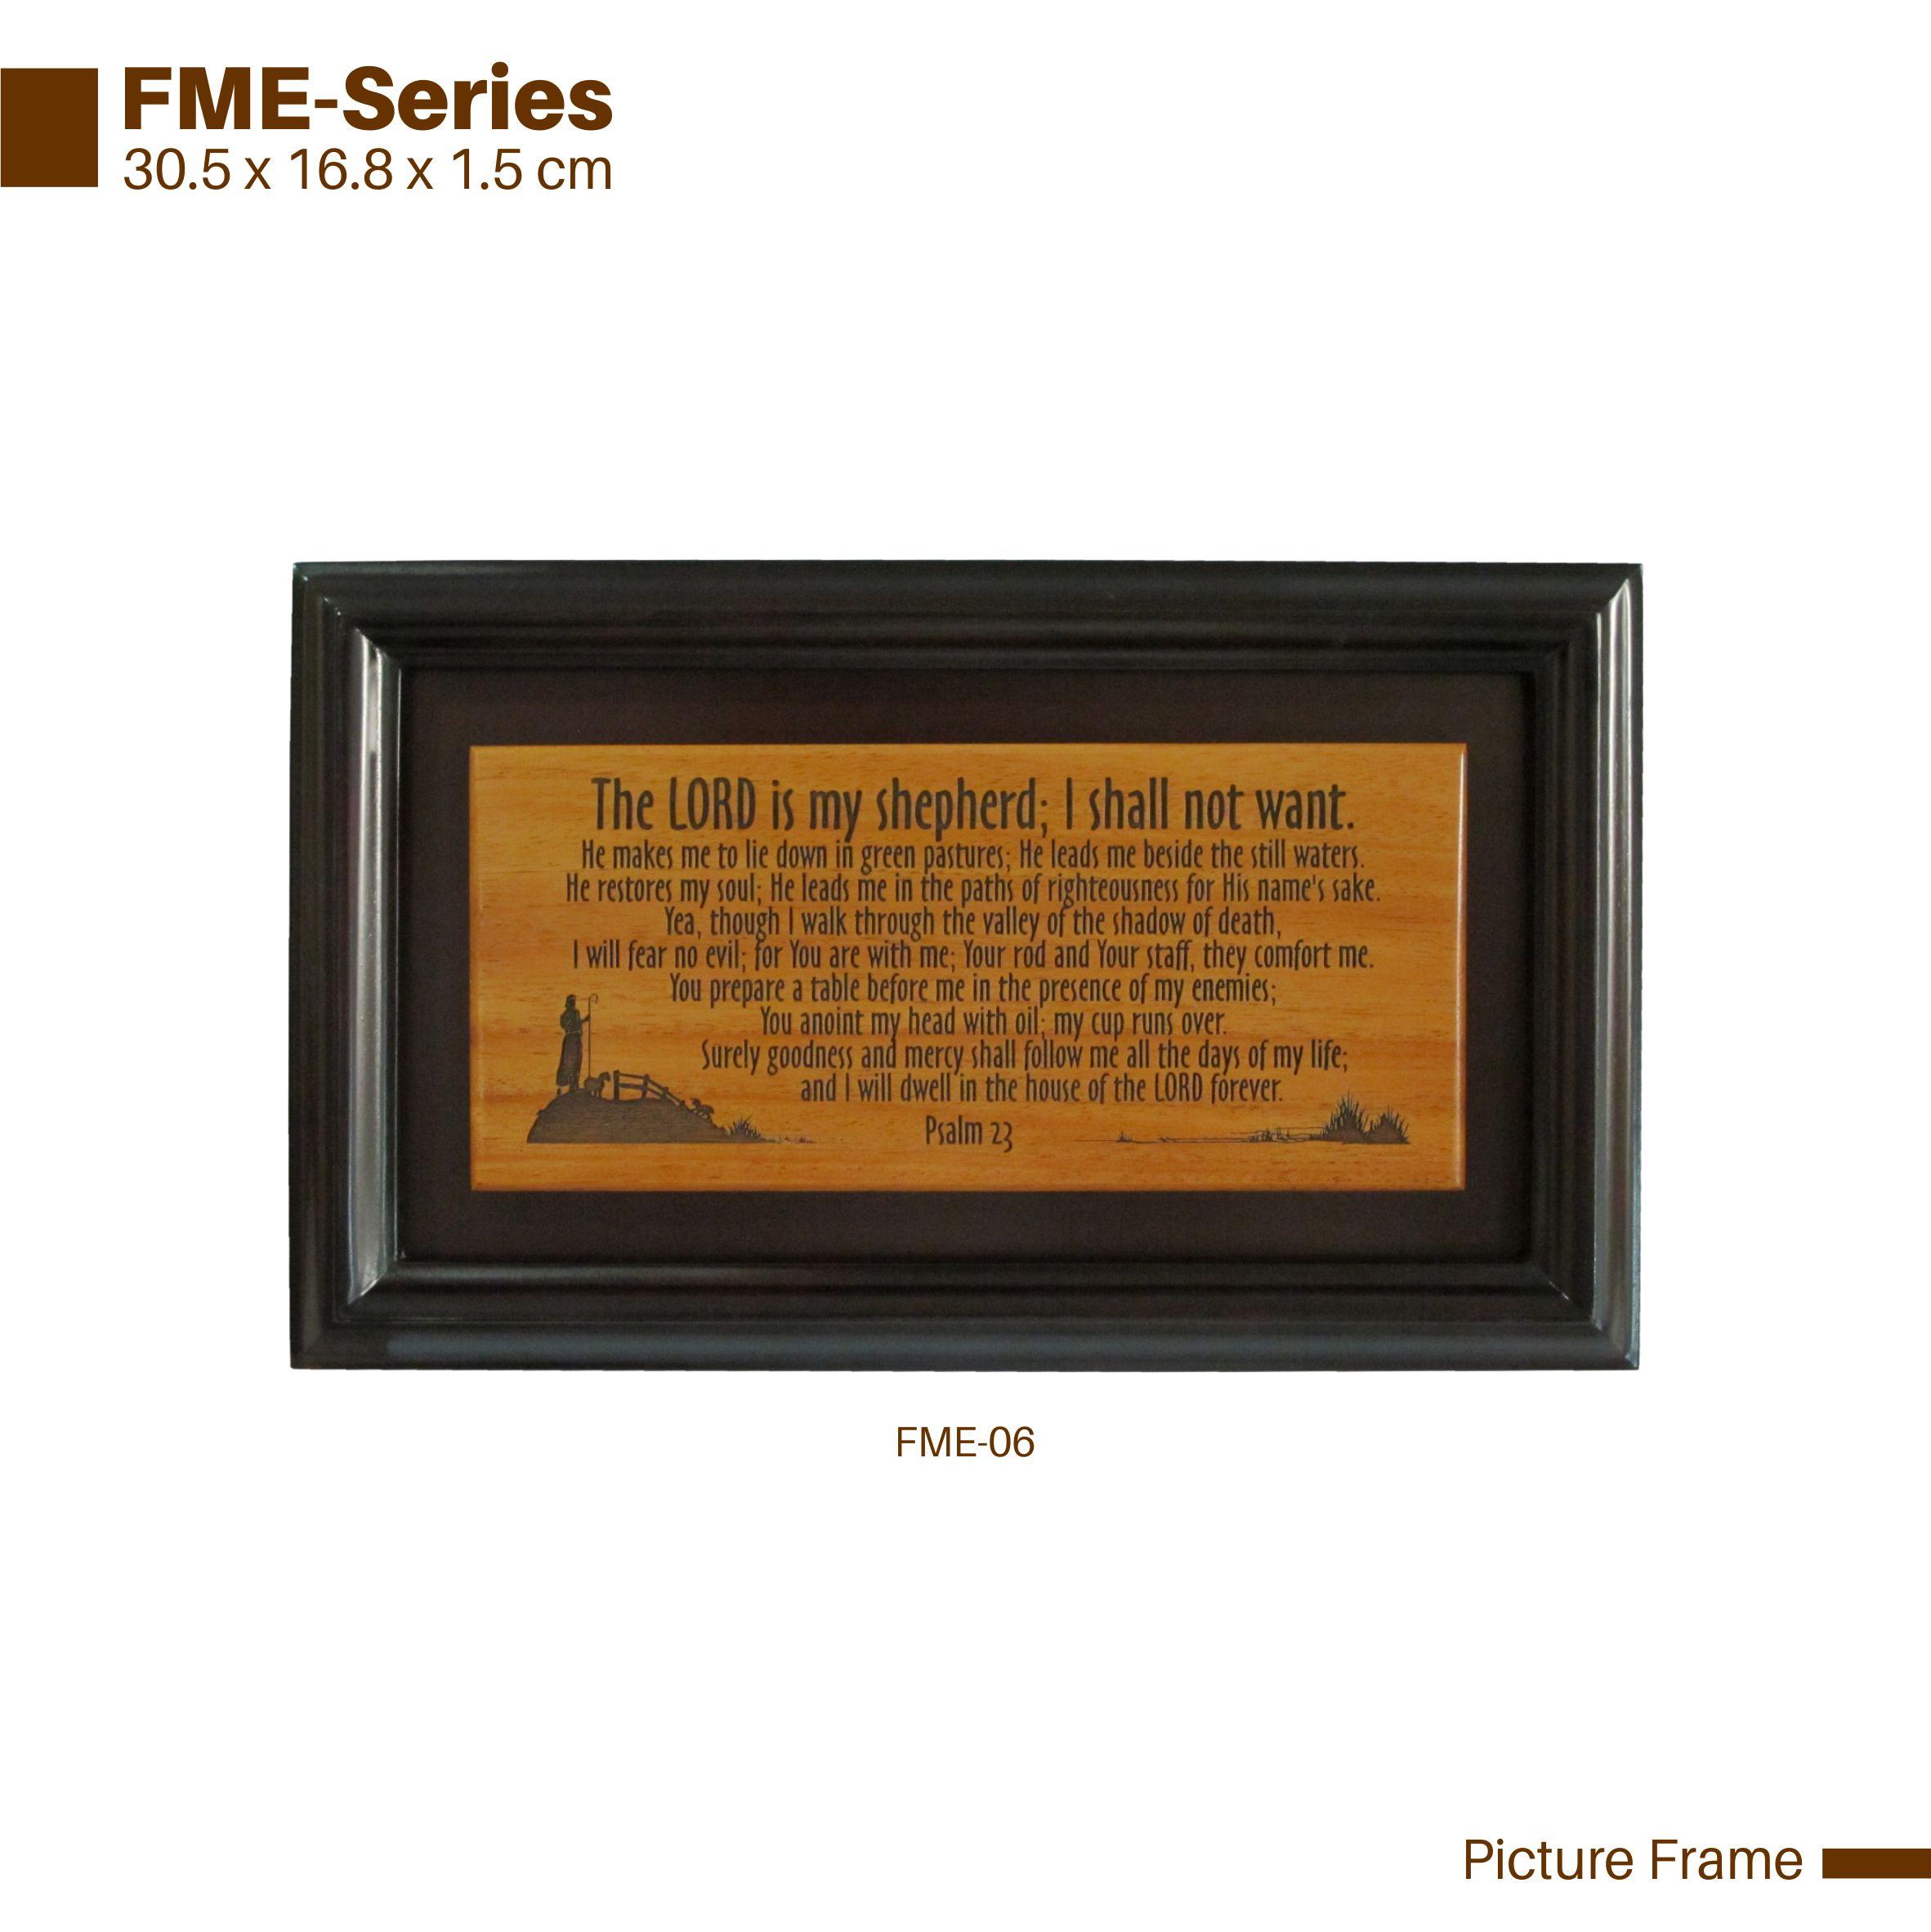 FME-Series